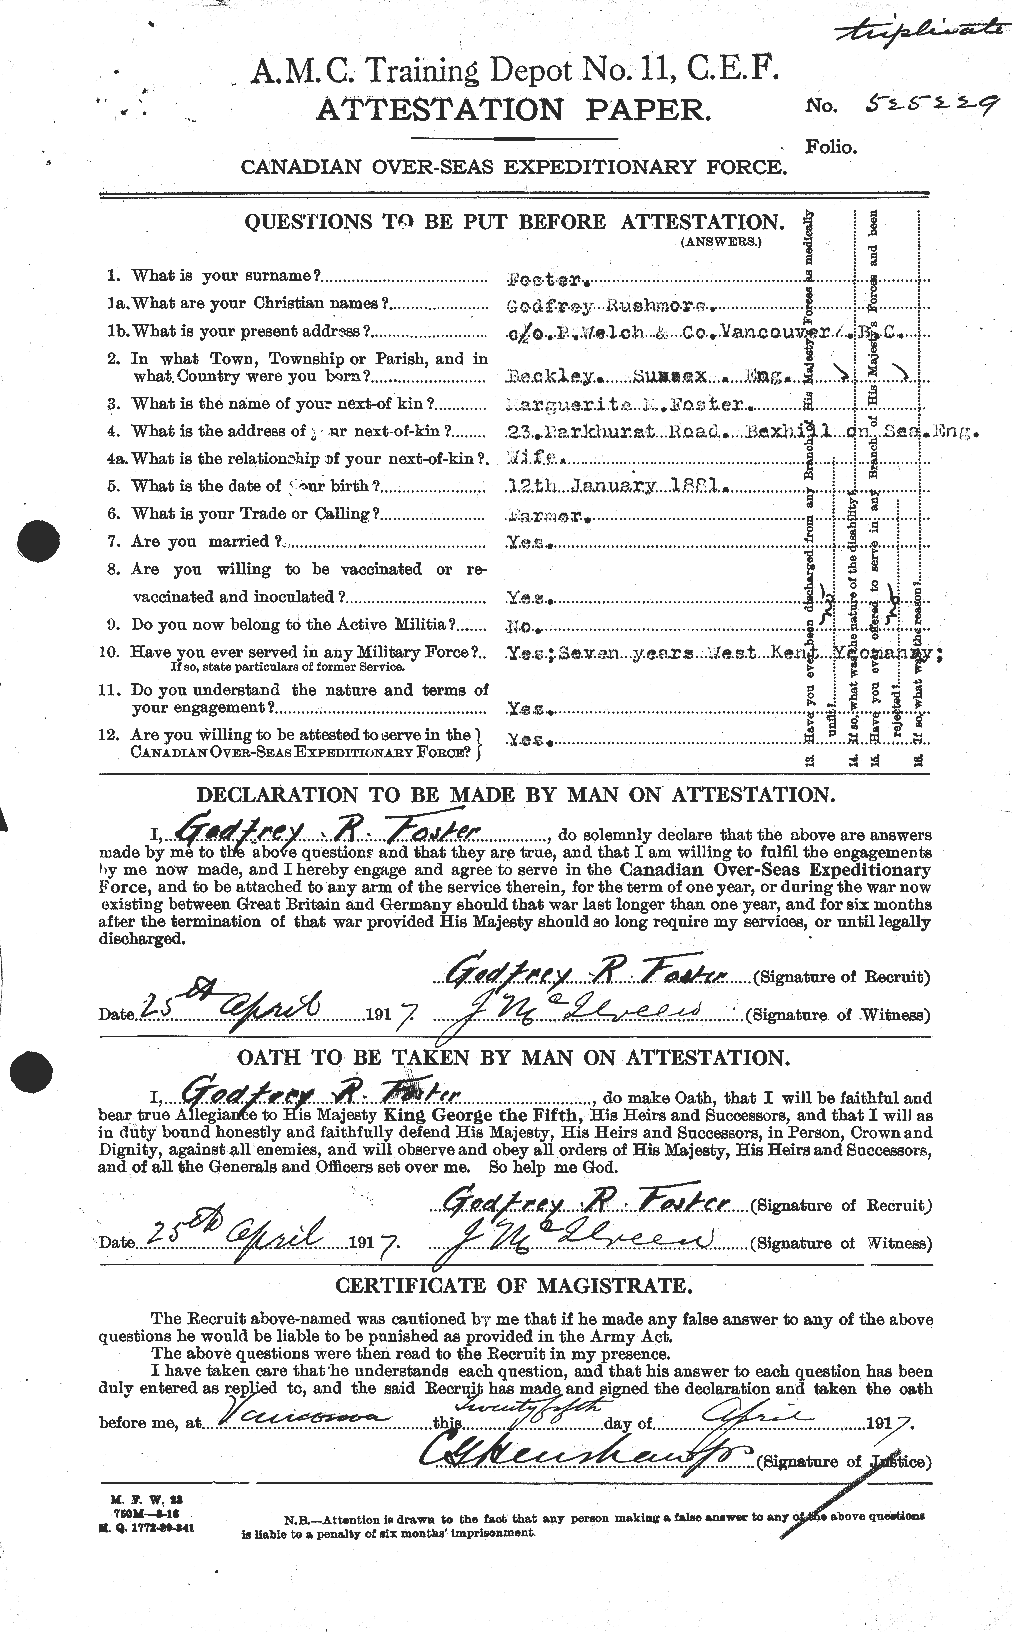 Dossiers du Personnel de la Première Guerre mondiale - CEC 330716a